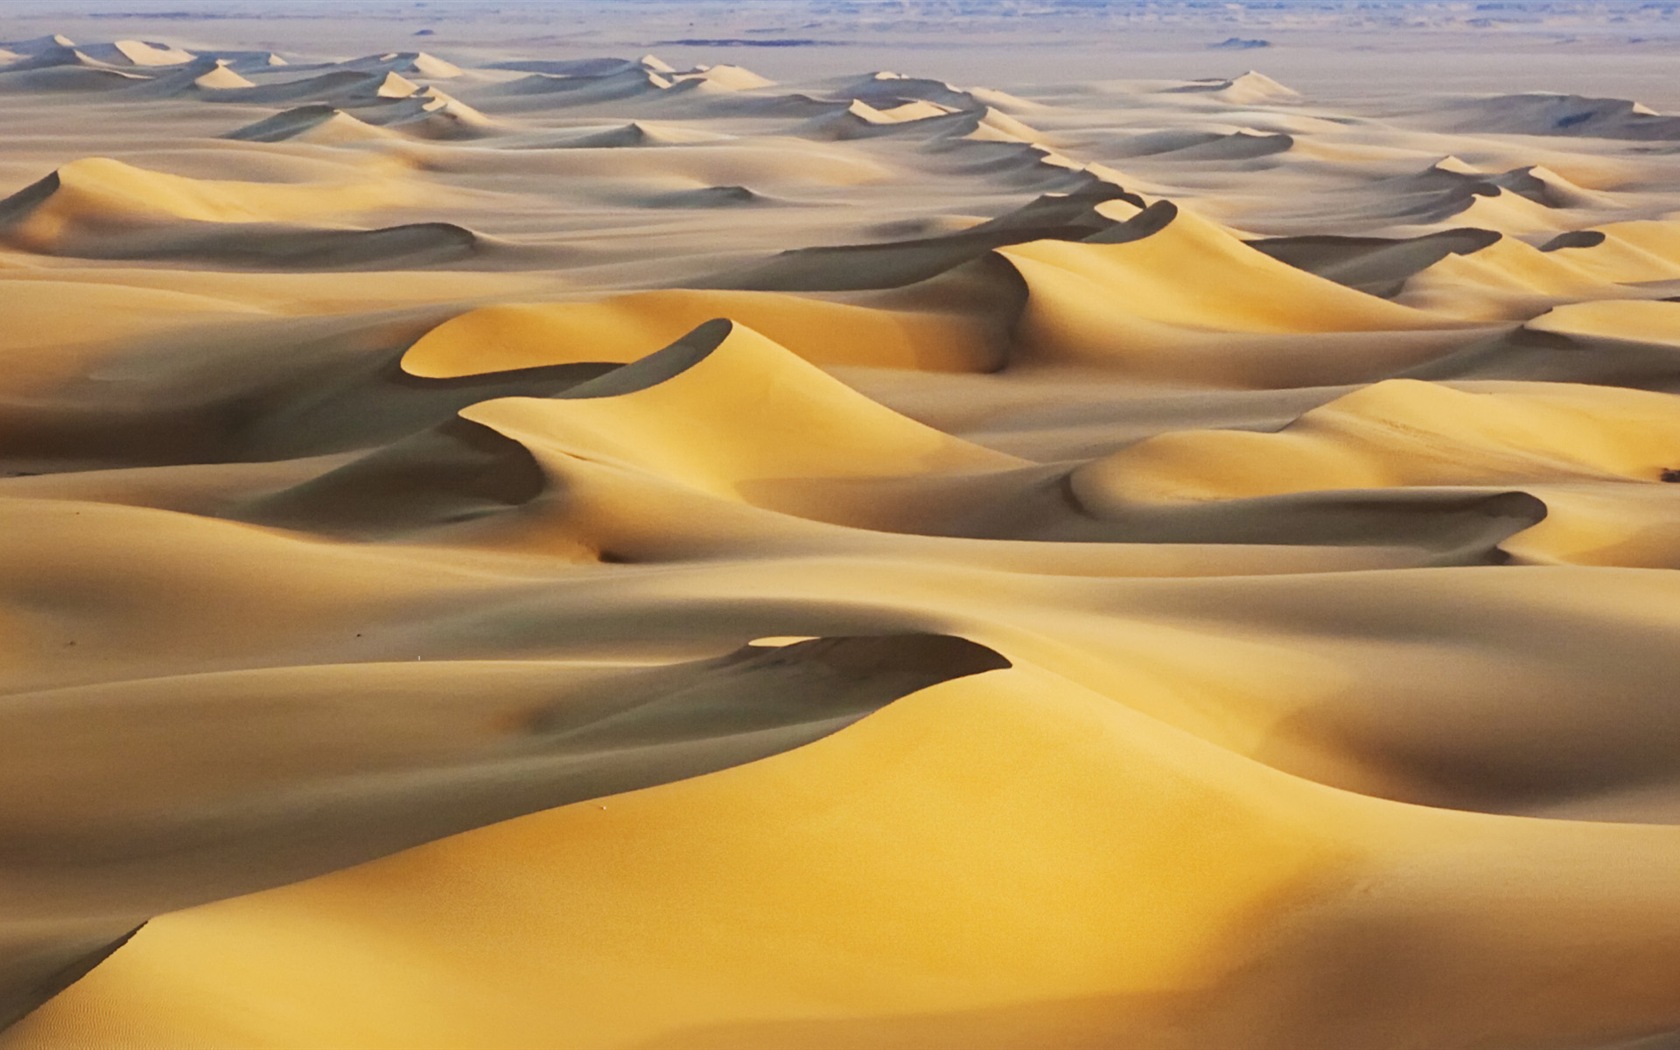 Les déserts chauds et arides, de Windows 8 fonds d'écran widescreen panoramique #4 - 1680x1050